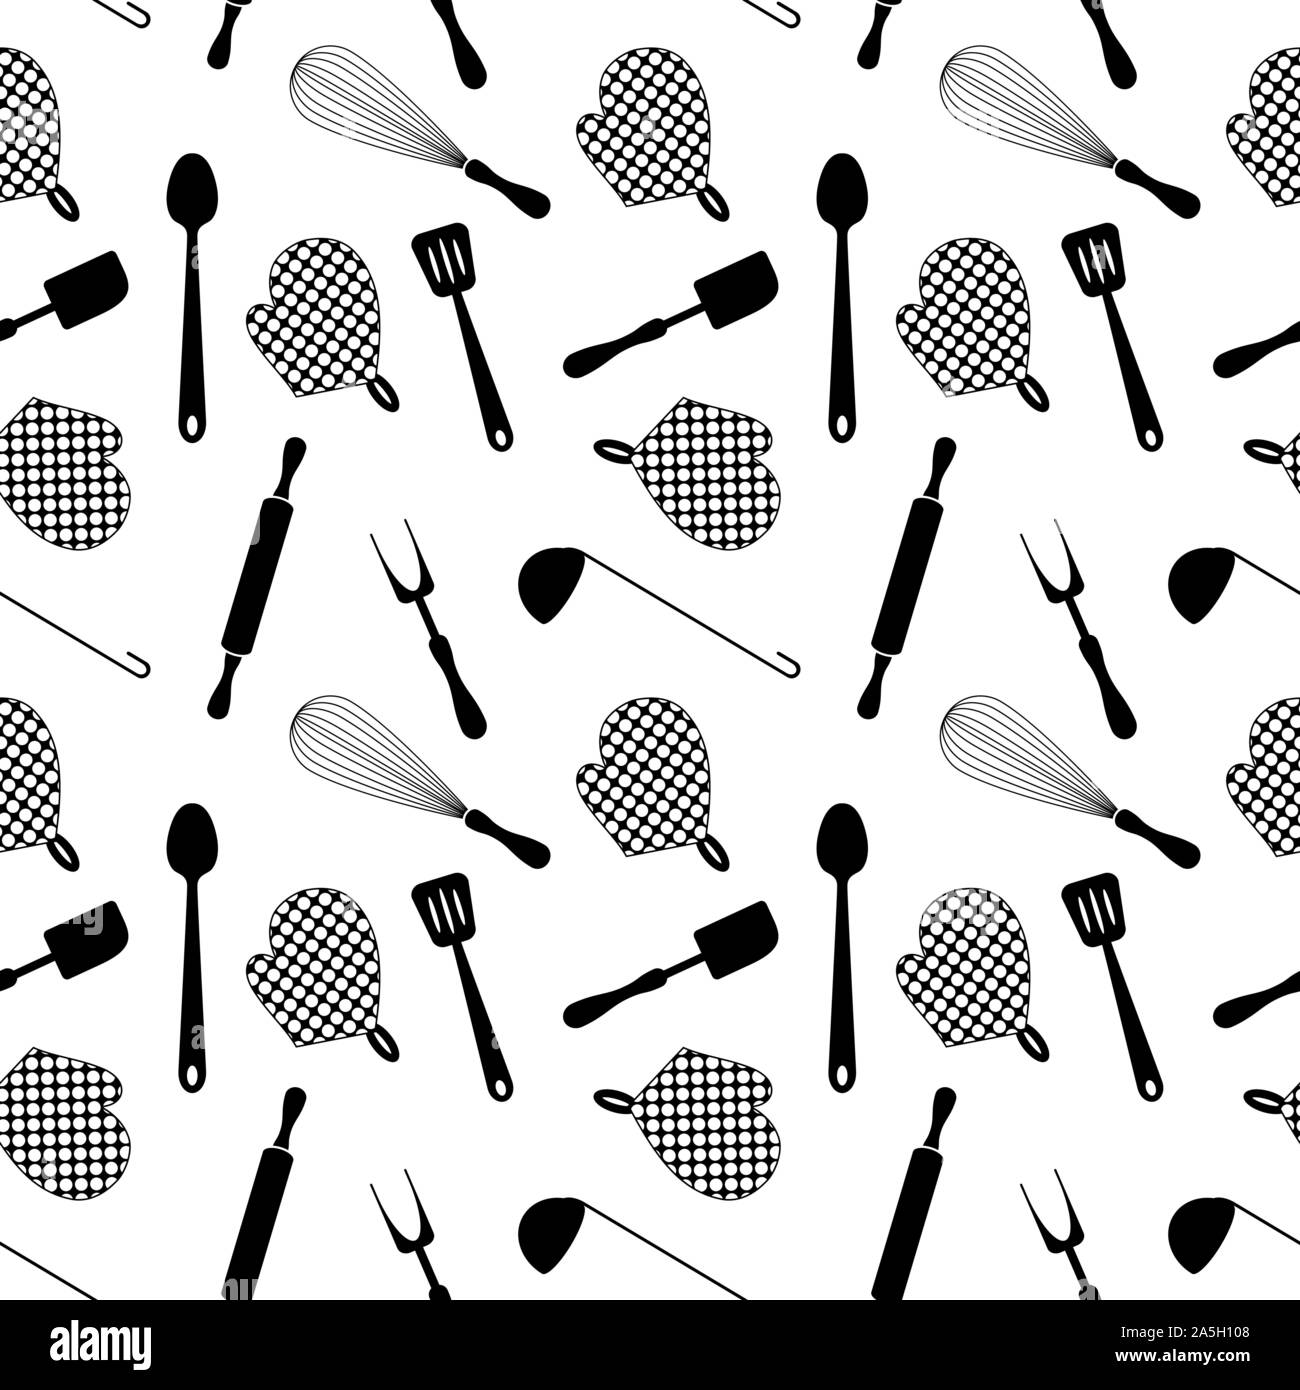 Suministros De Cocina Imágenes de stock en blanco y negro - Alamy